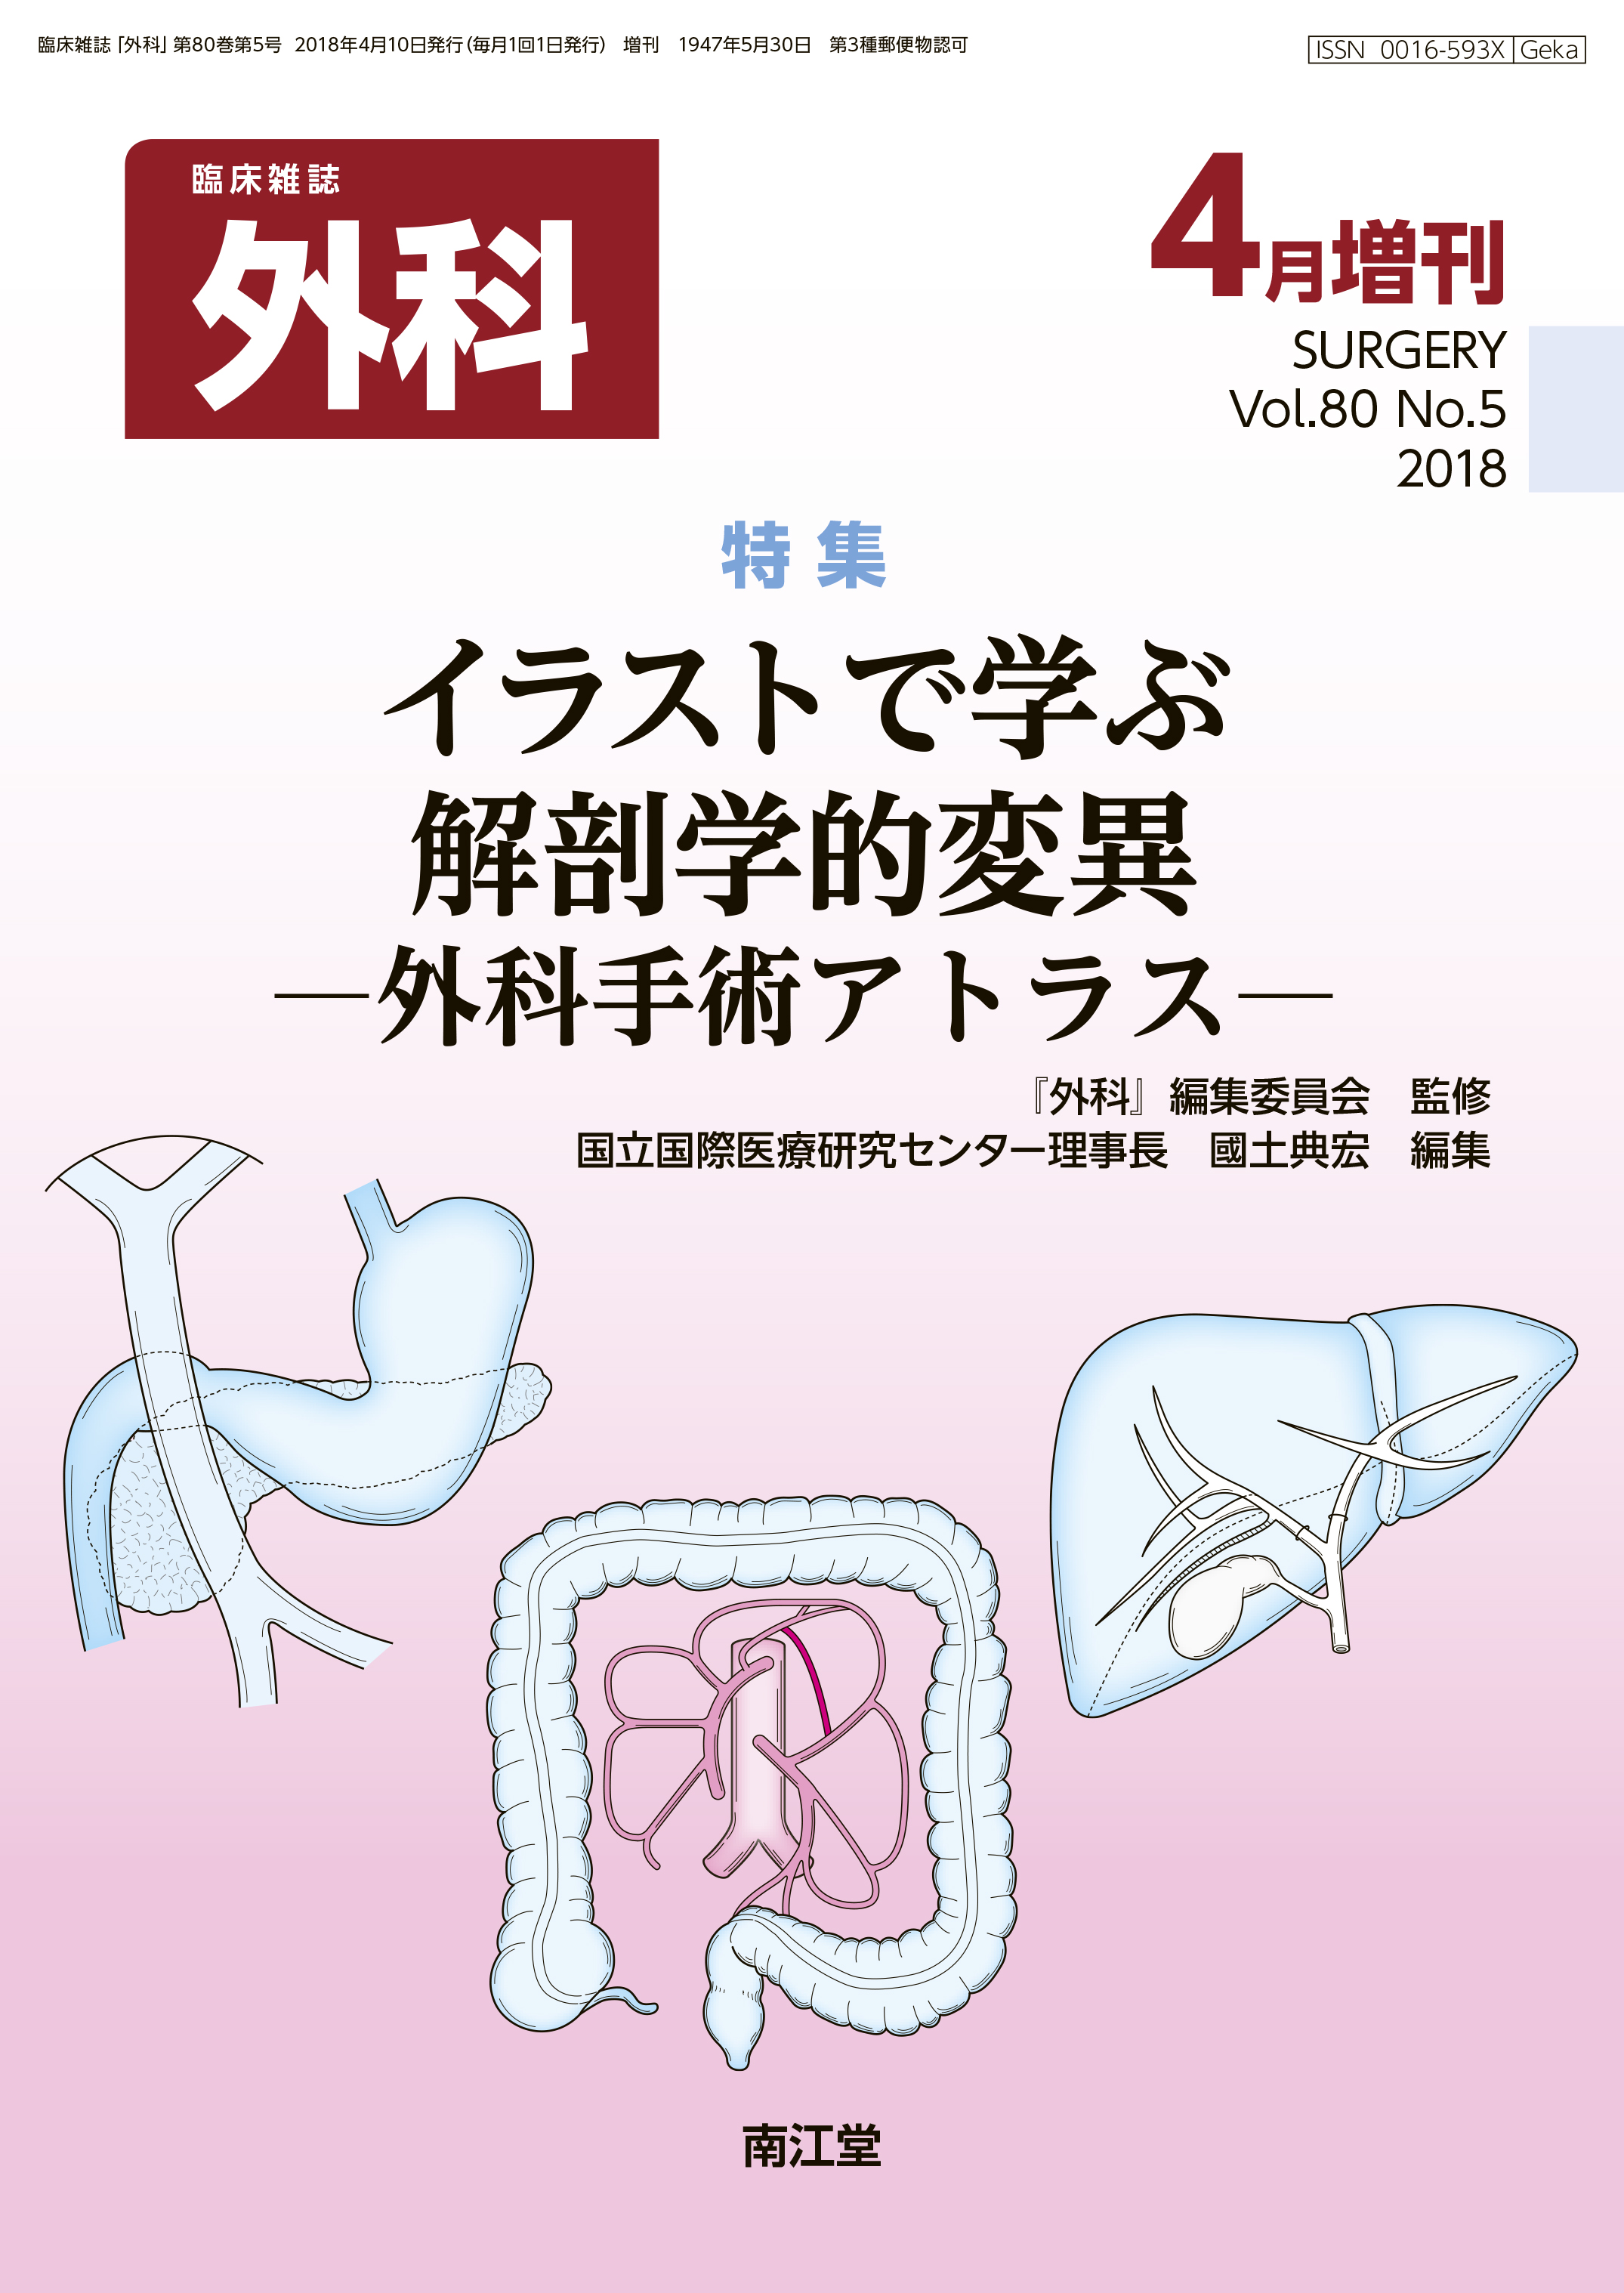 臨床雑誌外科 Vol 80 No 5 電子版 医書 Jp